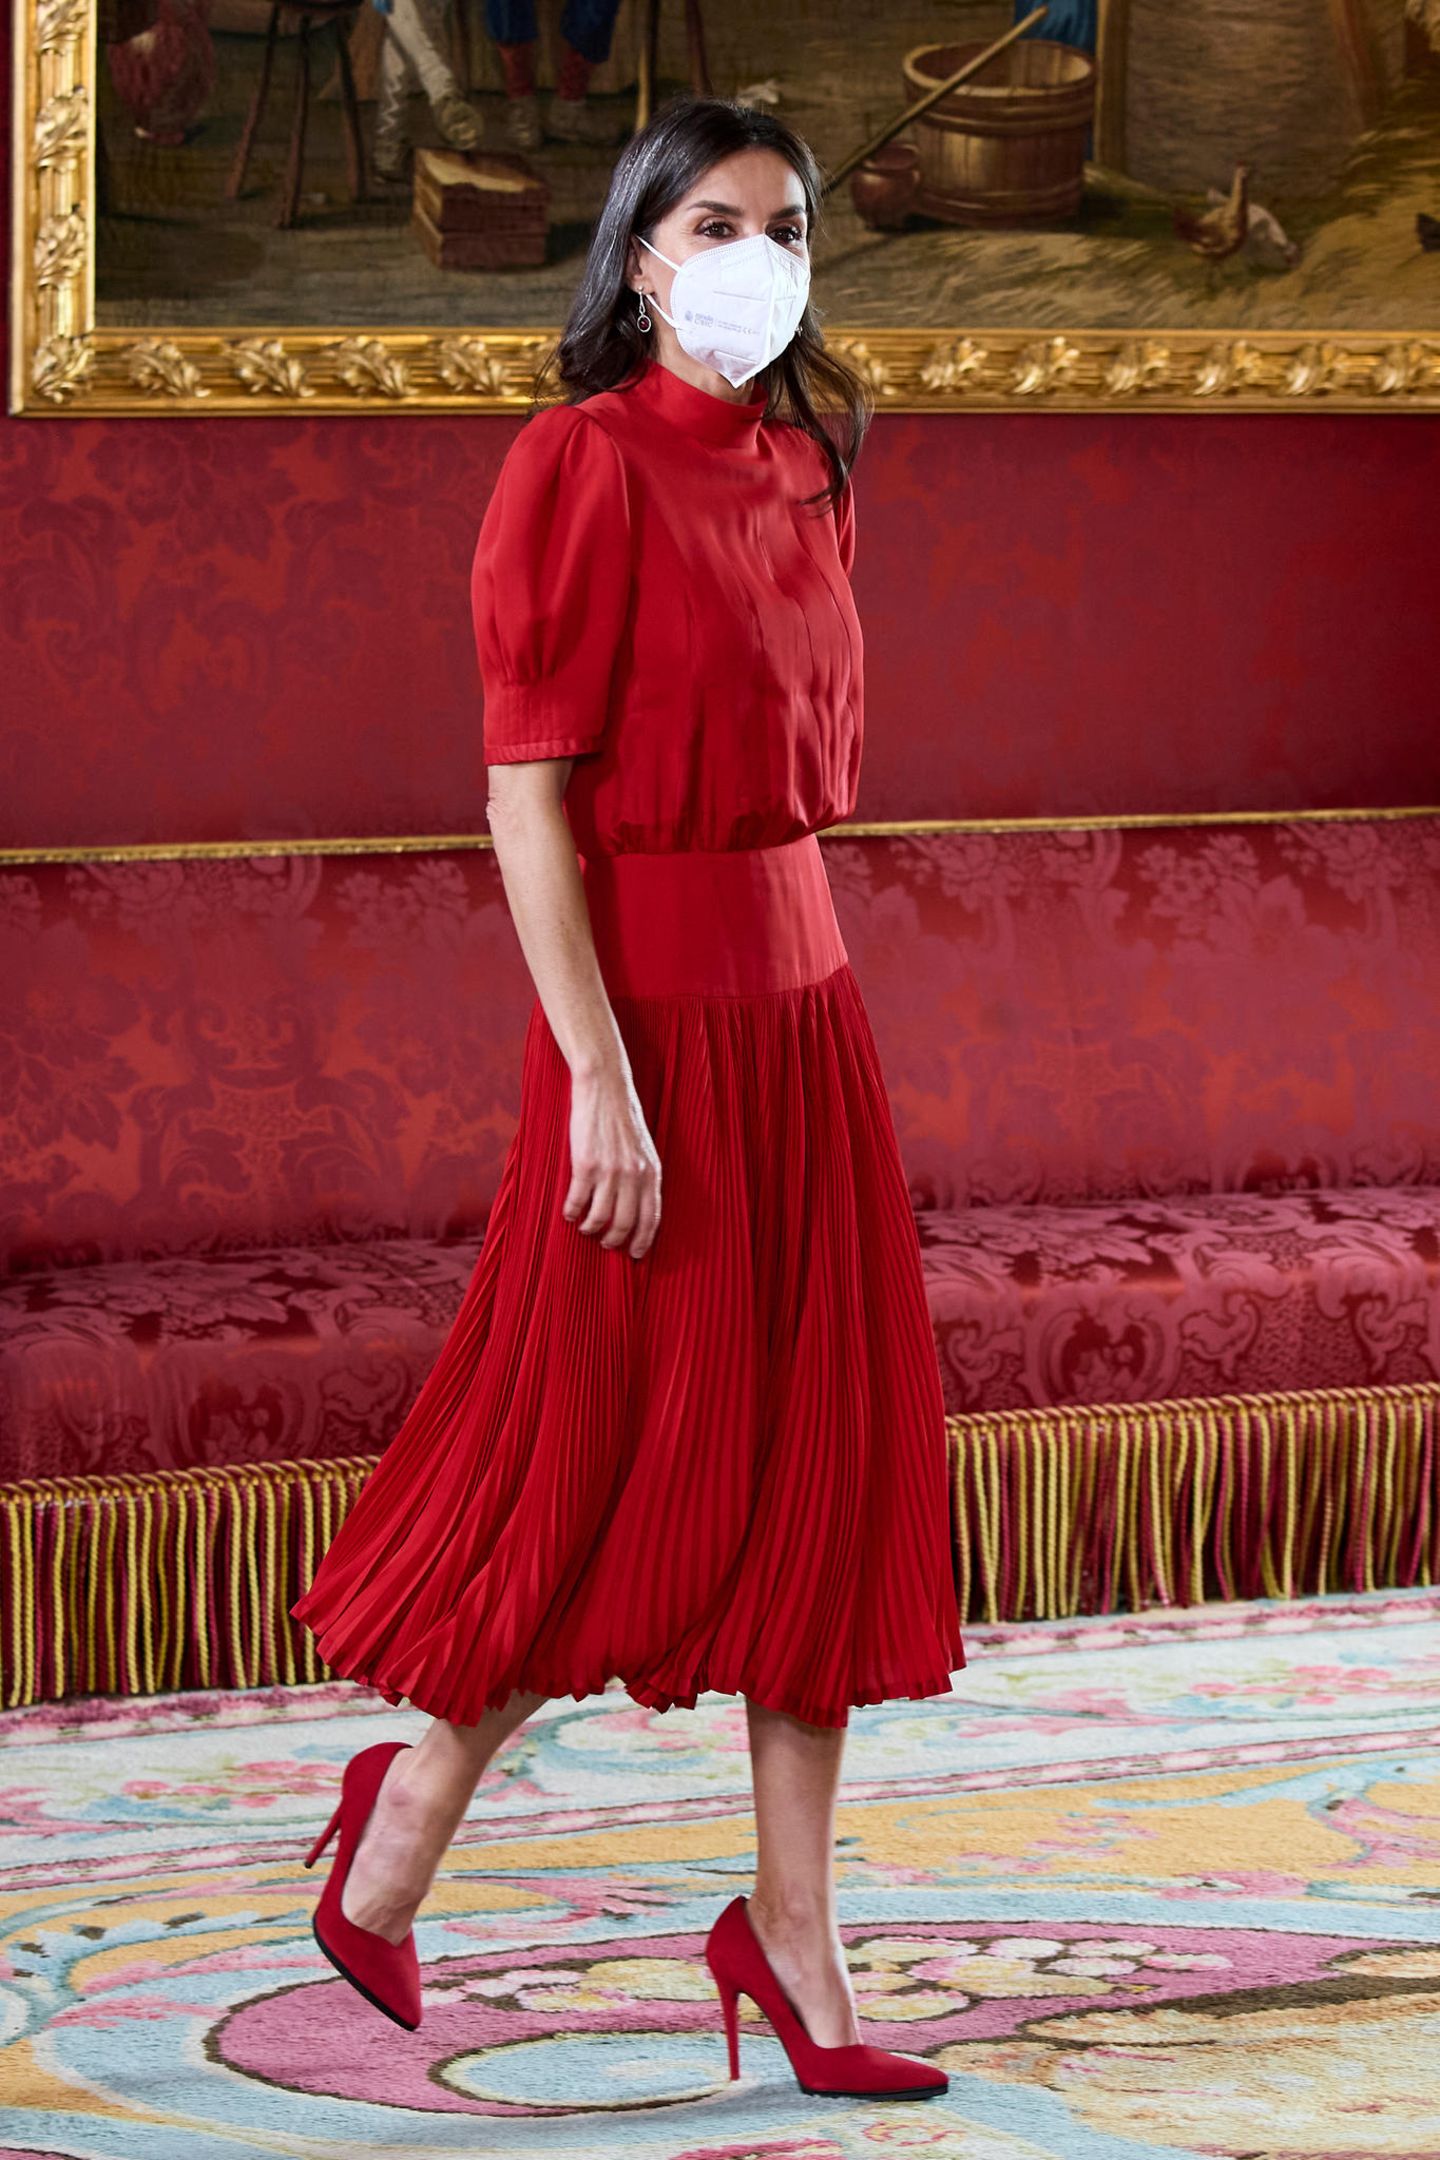 In dem taillierten Midi-Kleid von Carolina Herrera strahlt Königin Letizia bei einem offiziellen Termin auf Costa Rica. Doch die Kombi mit den roten Pumps kommt uns irgendwie bekannt vor ...